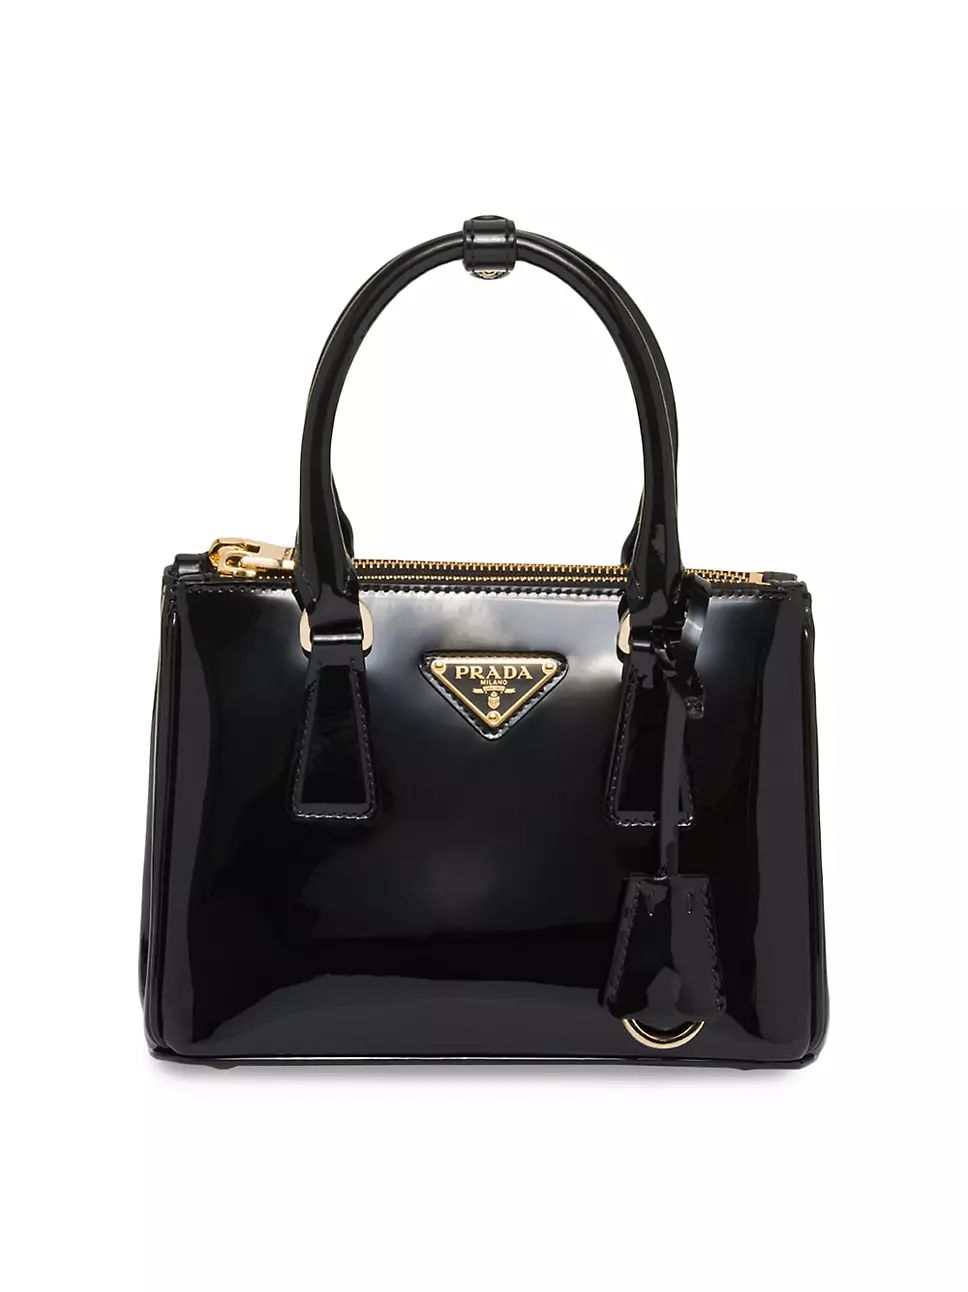 Prada Galleria Patent Leather Mini Bag | Saks Fifth Avenue